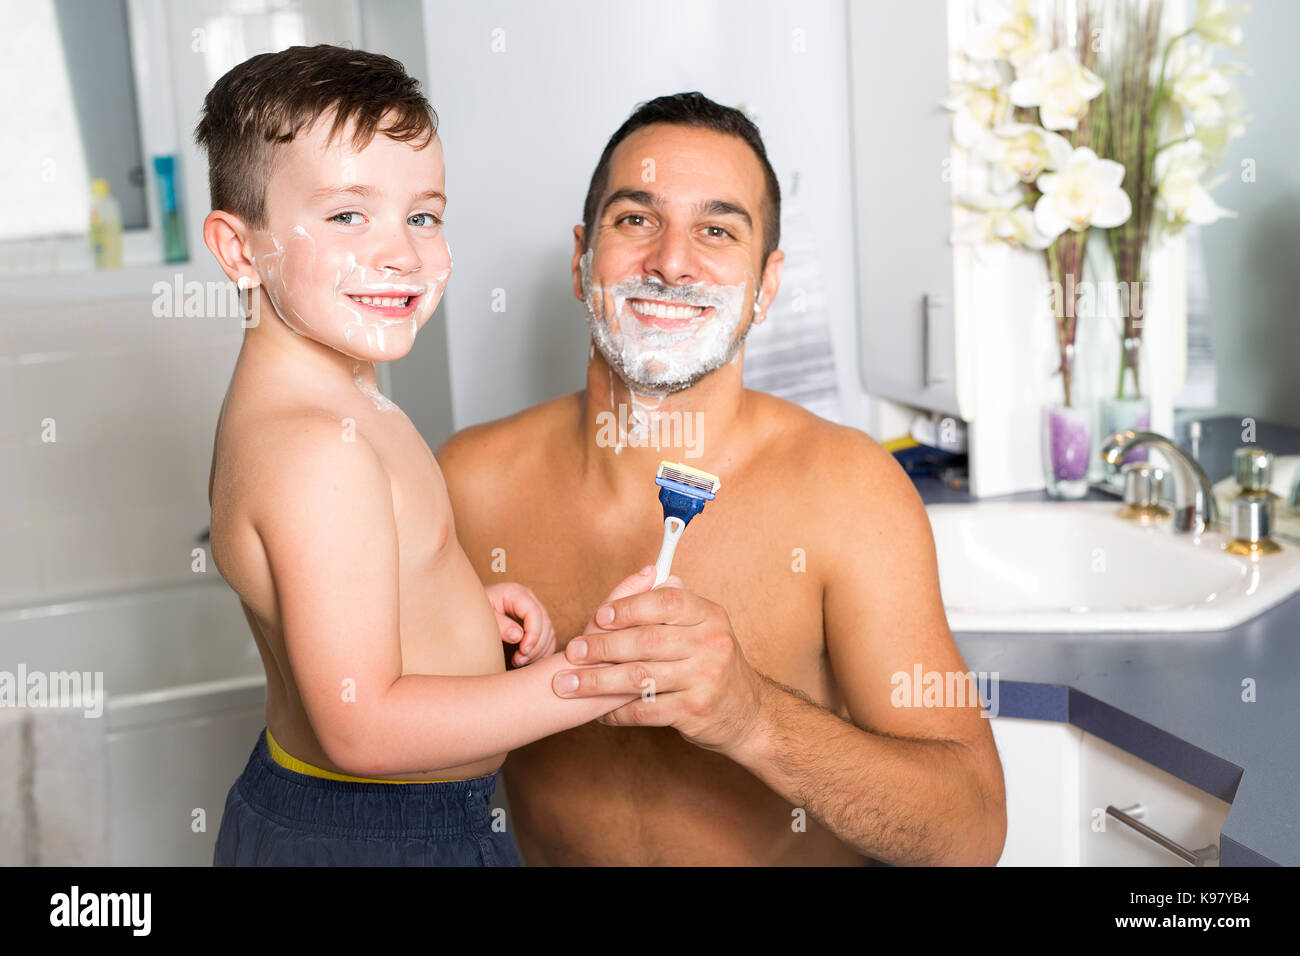 Мама бреет дочь. Папа в пене. Отец бреется в ванной. Мальчик с папой в ванной. Отец и сын в ванной комнате.